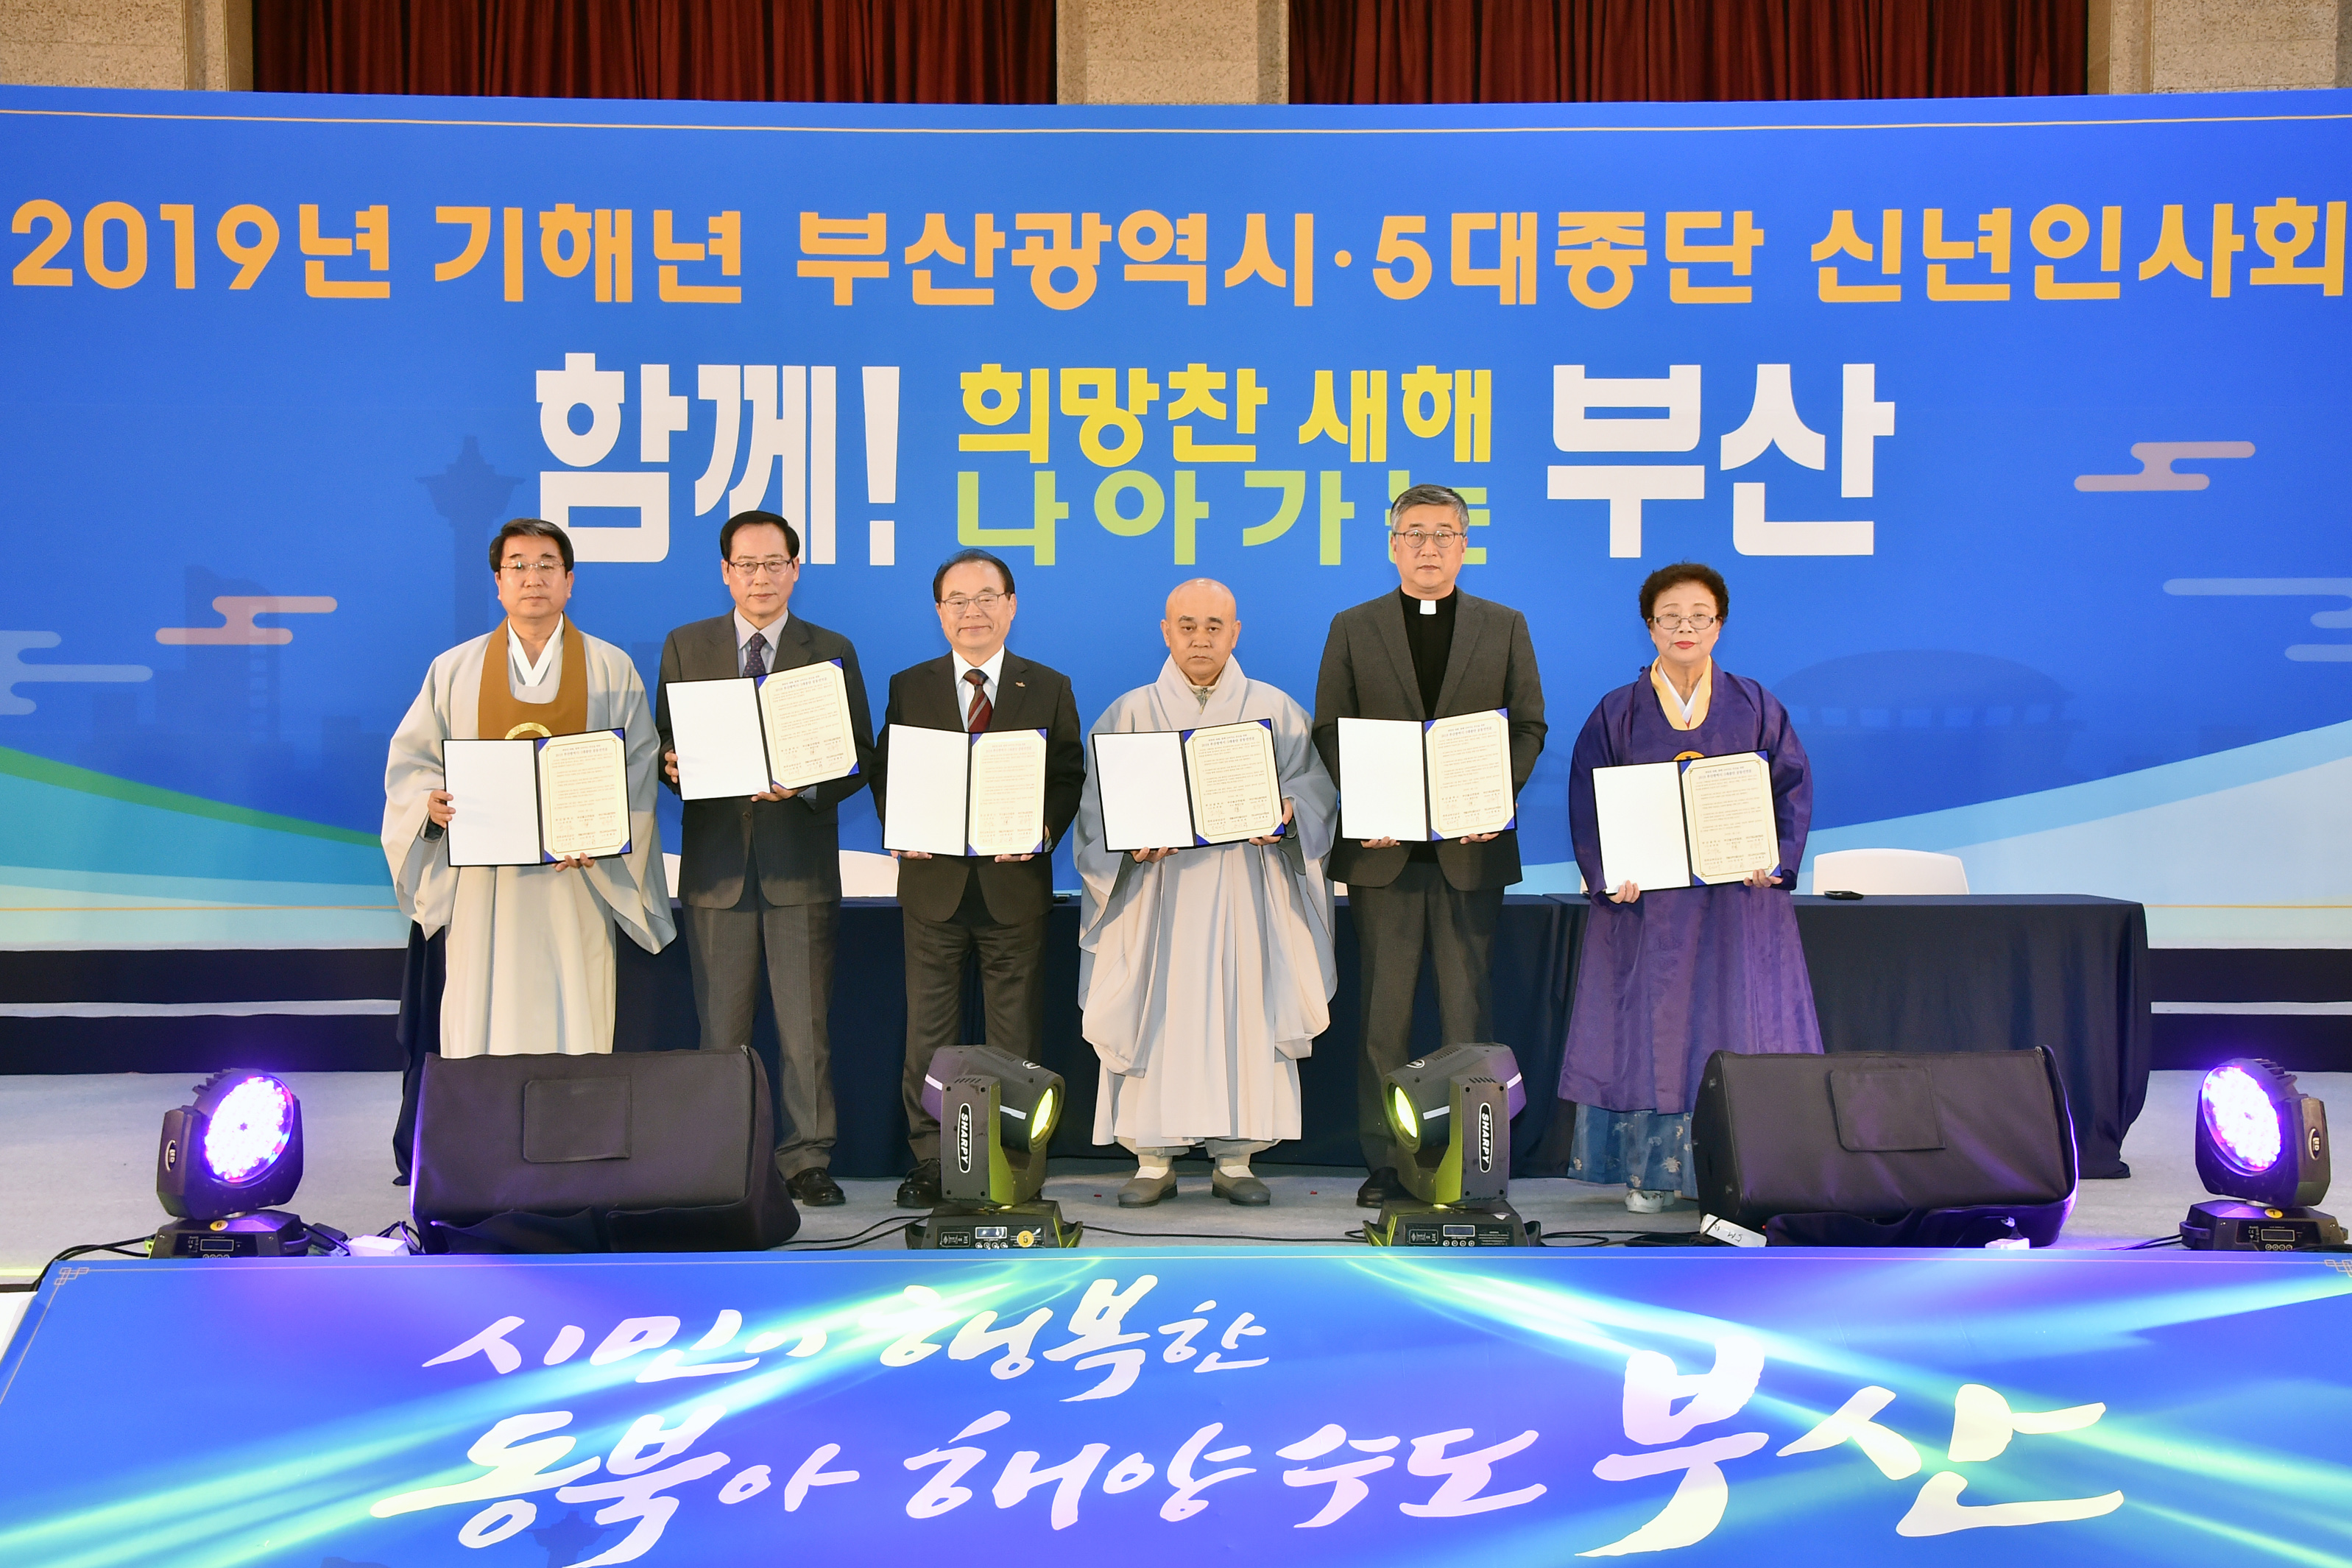 오거돈 부산시장, 최초 5대 종단 합동 신년인사회 개최